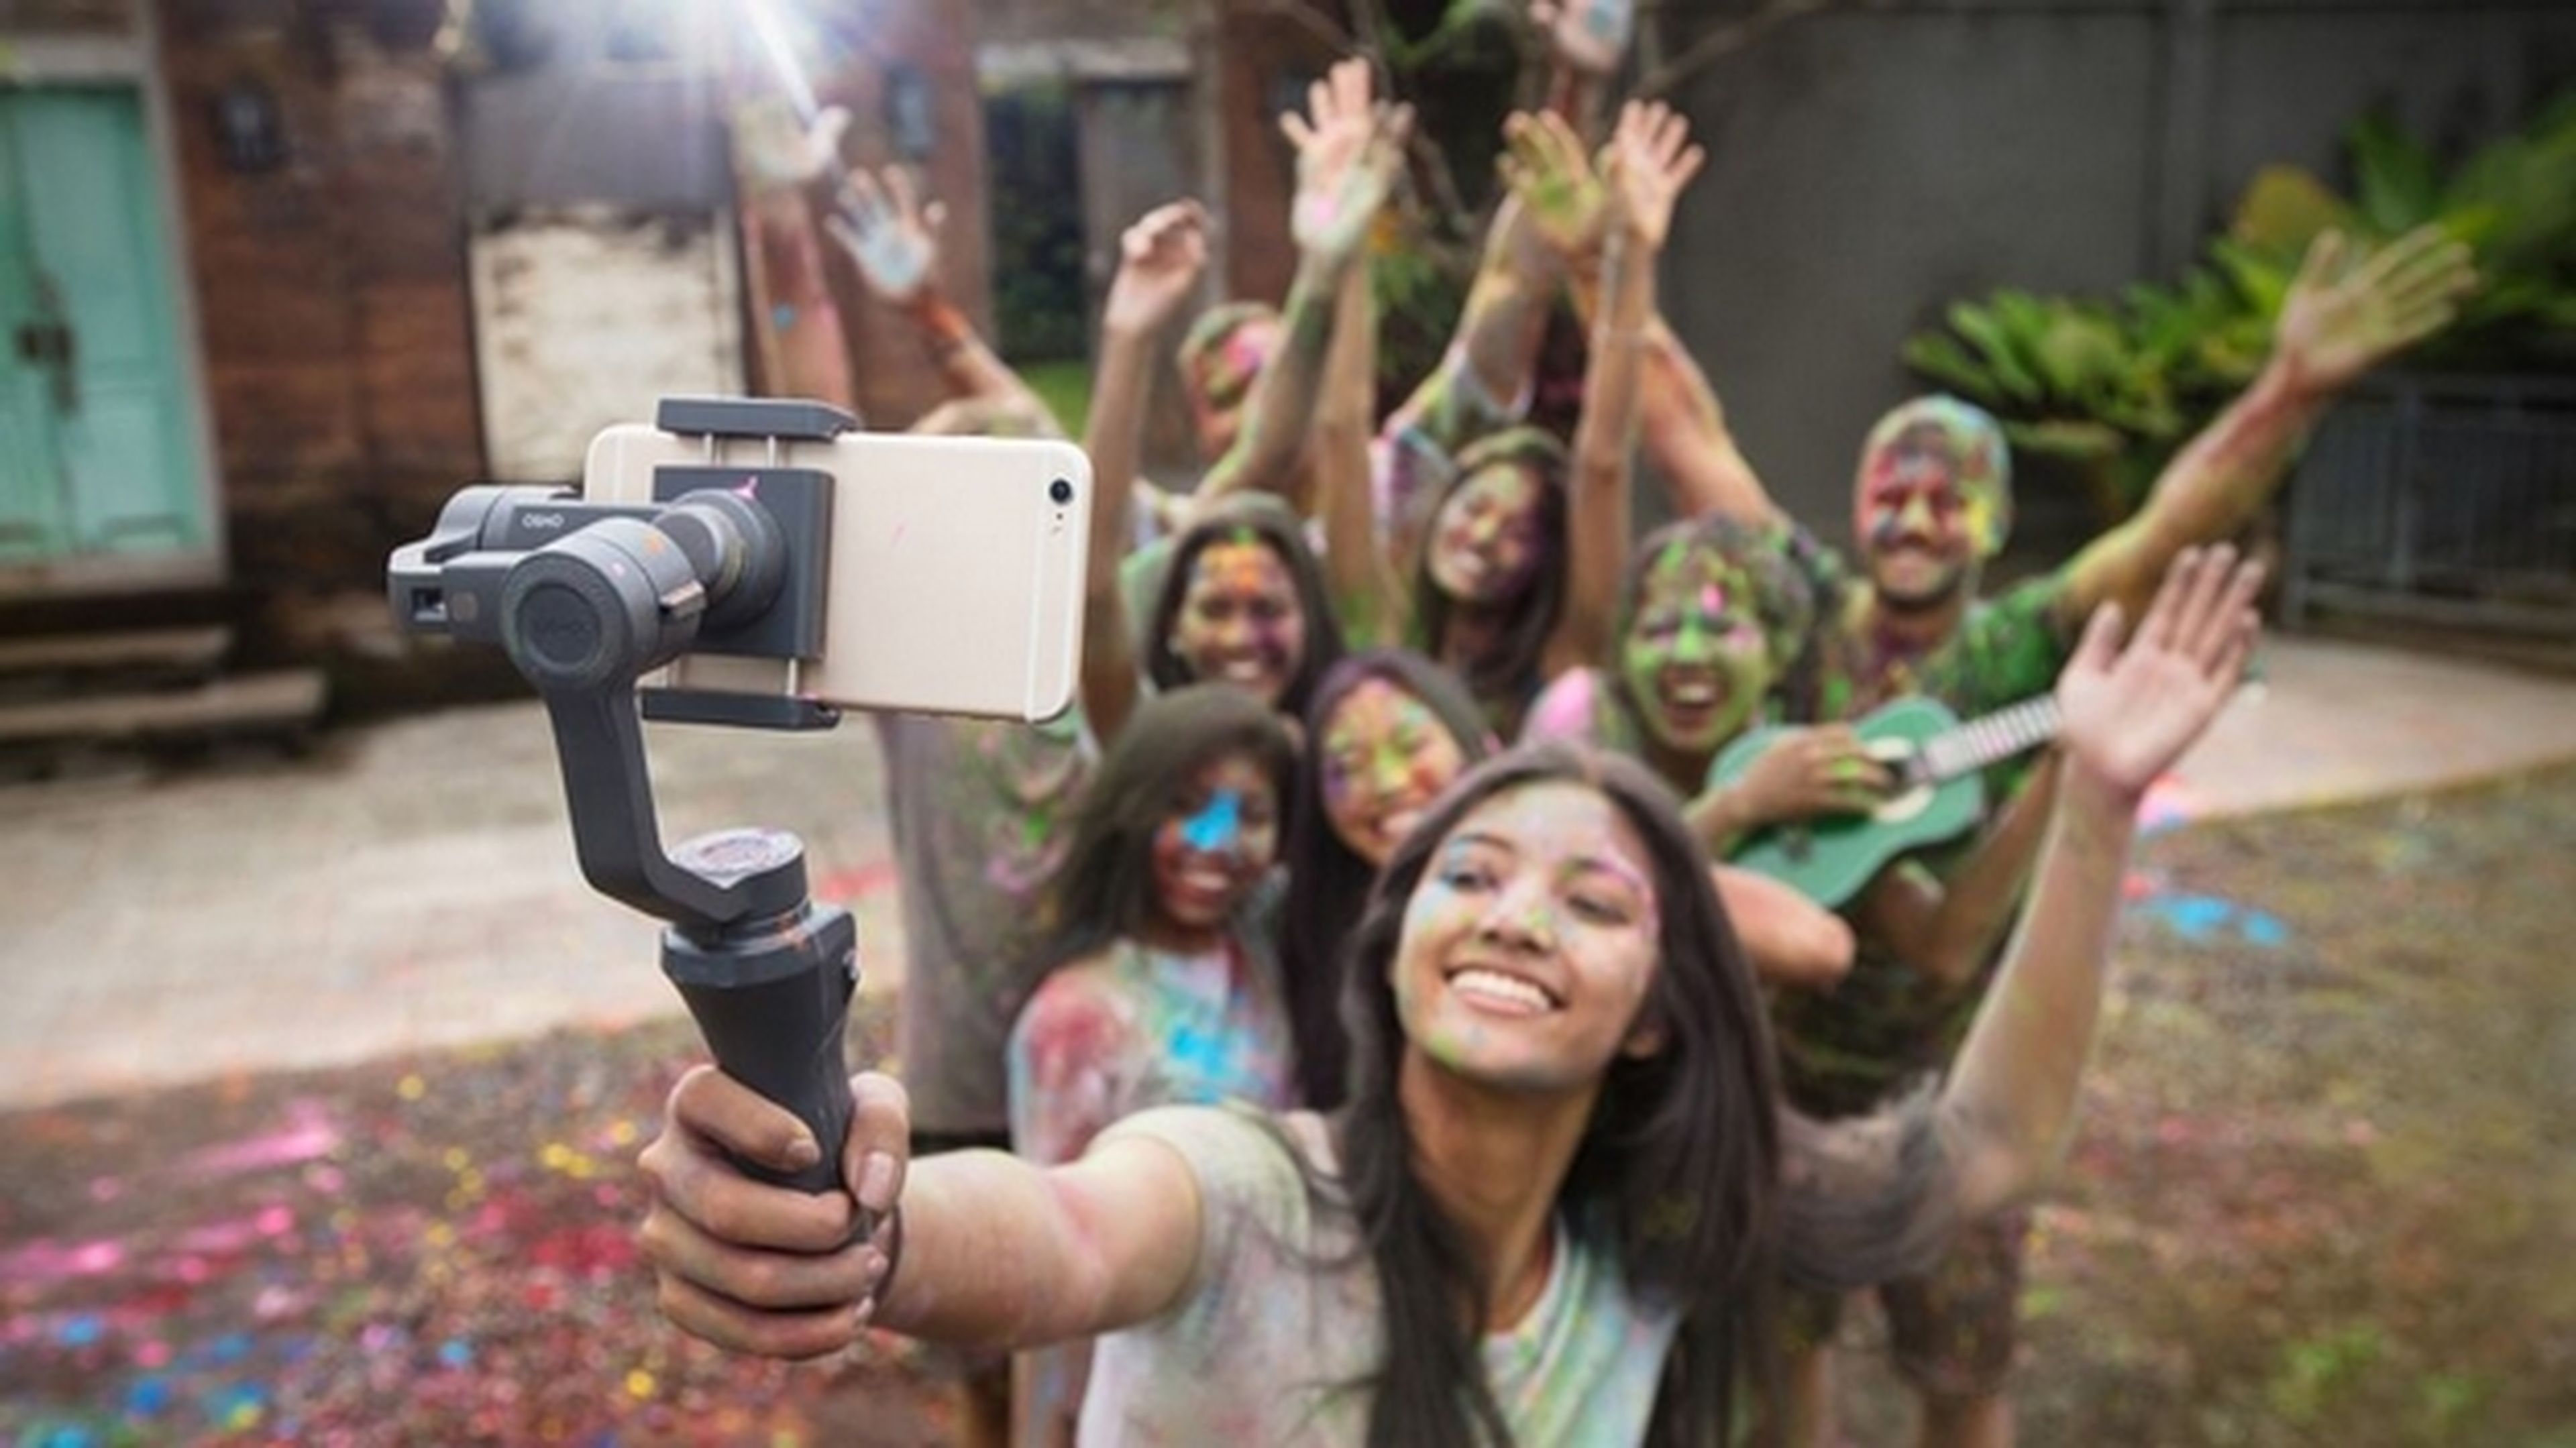 DJI Osmo Mobile 2, el palo para selfies con estabilizador